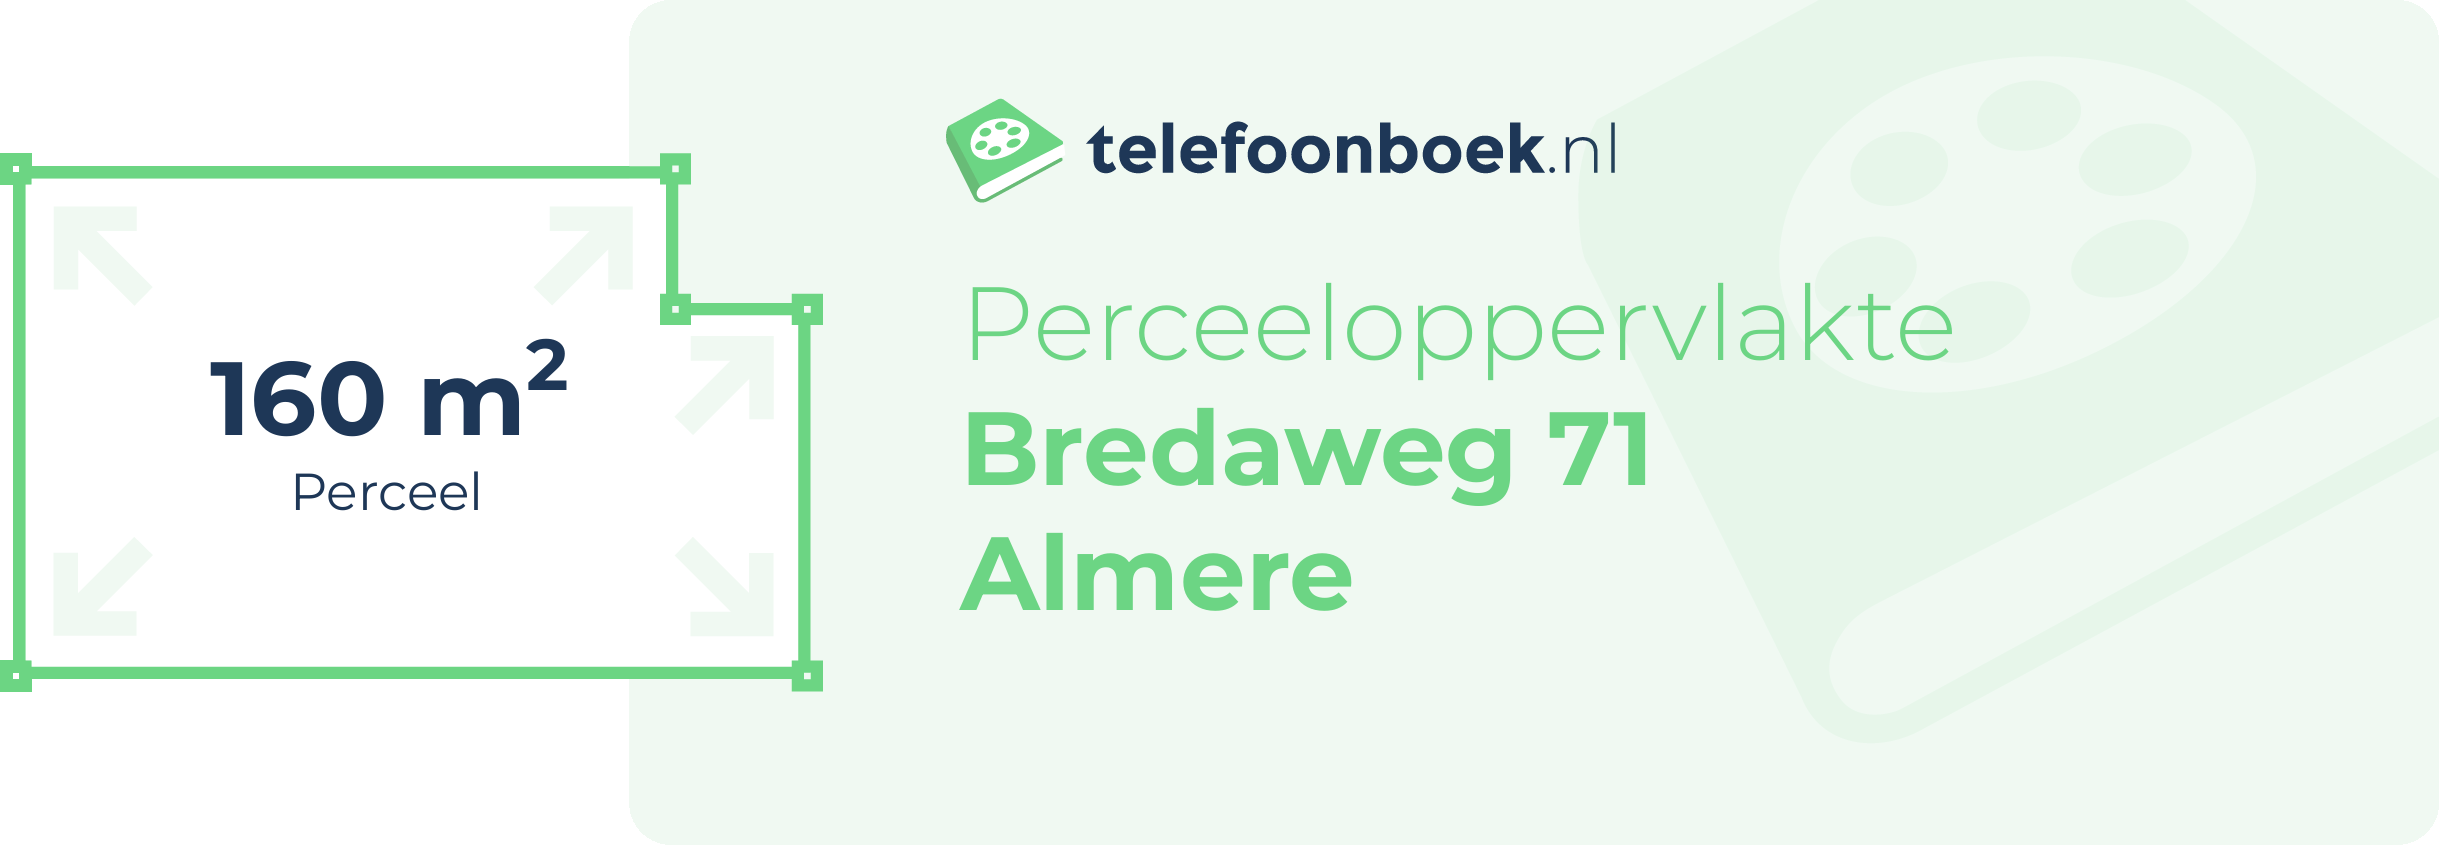 Perceeloppervlakte Bredaweg 71 Almere